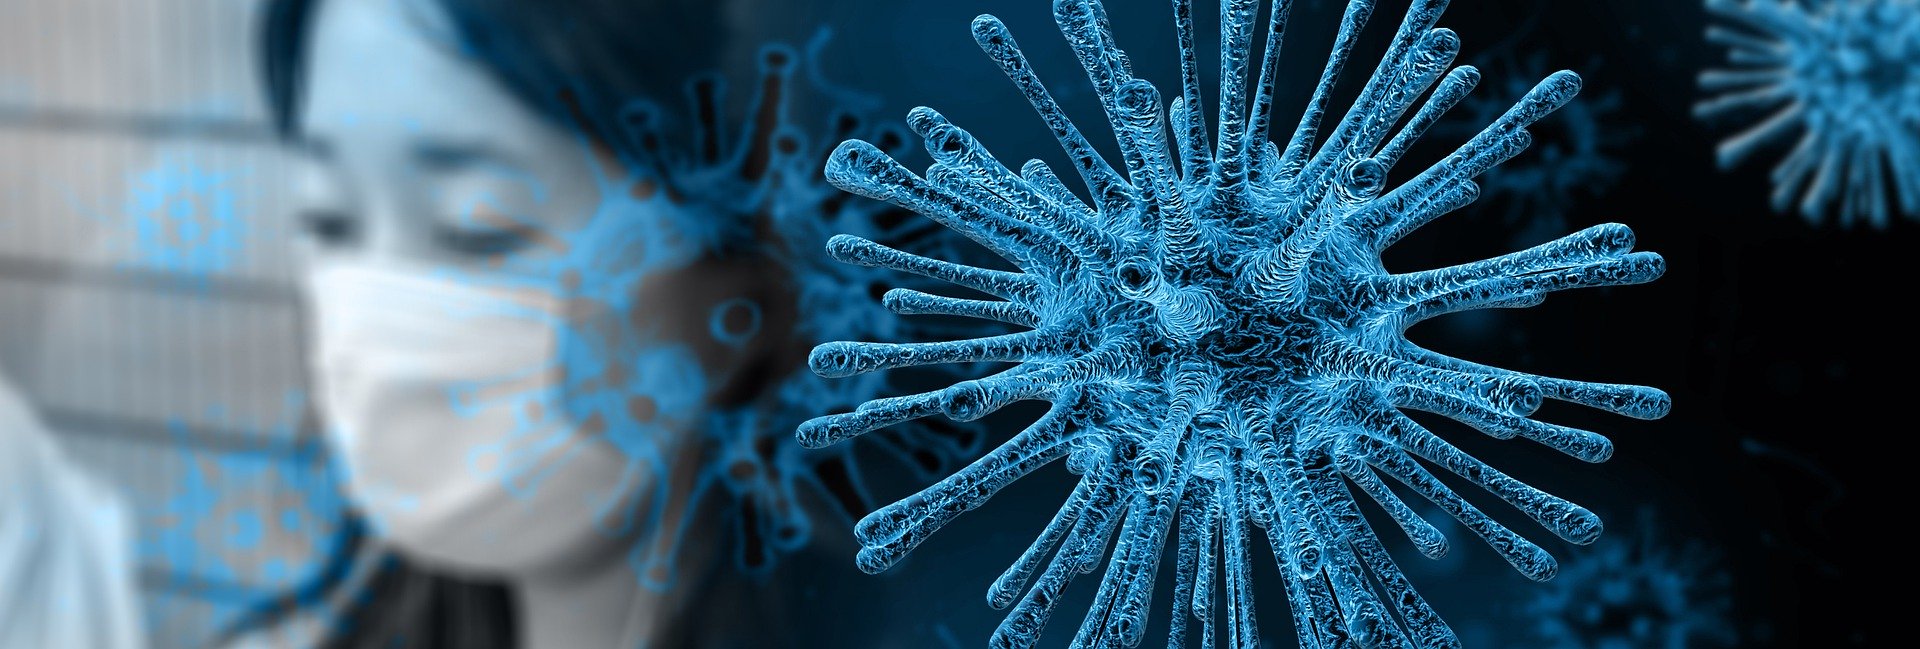 Coronavirus: Daily News and Updates July 2020